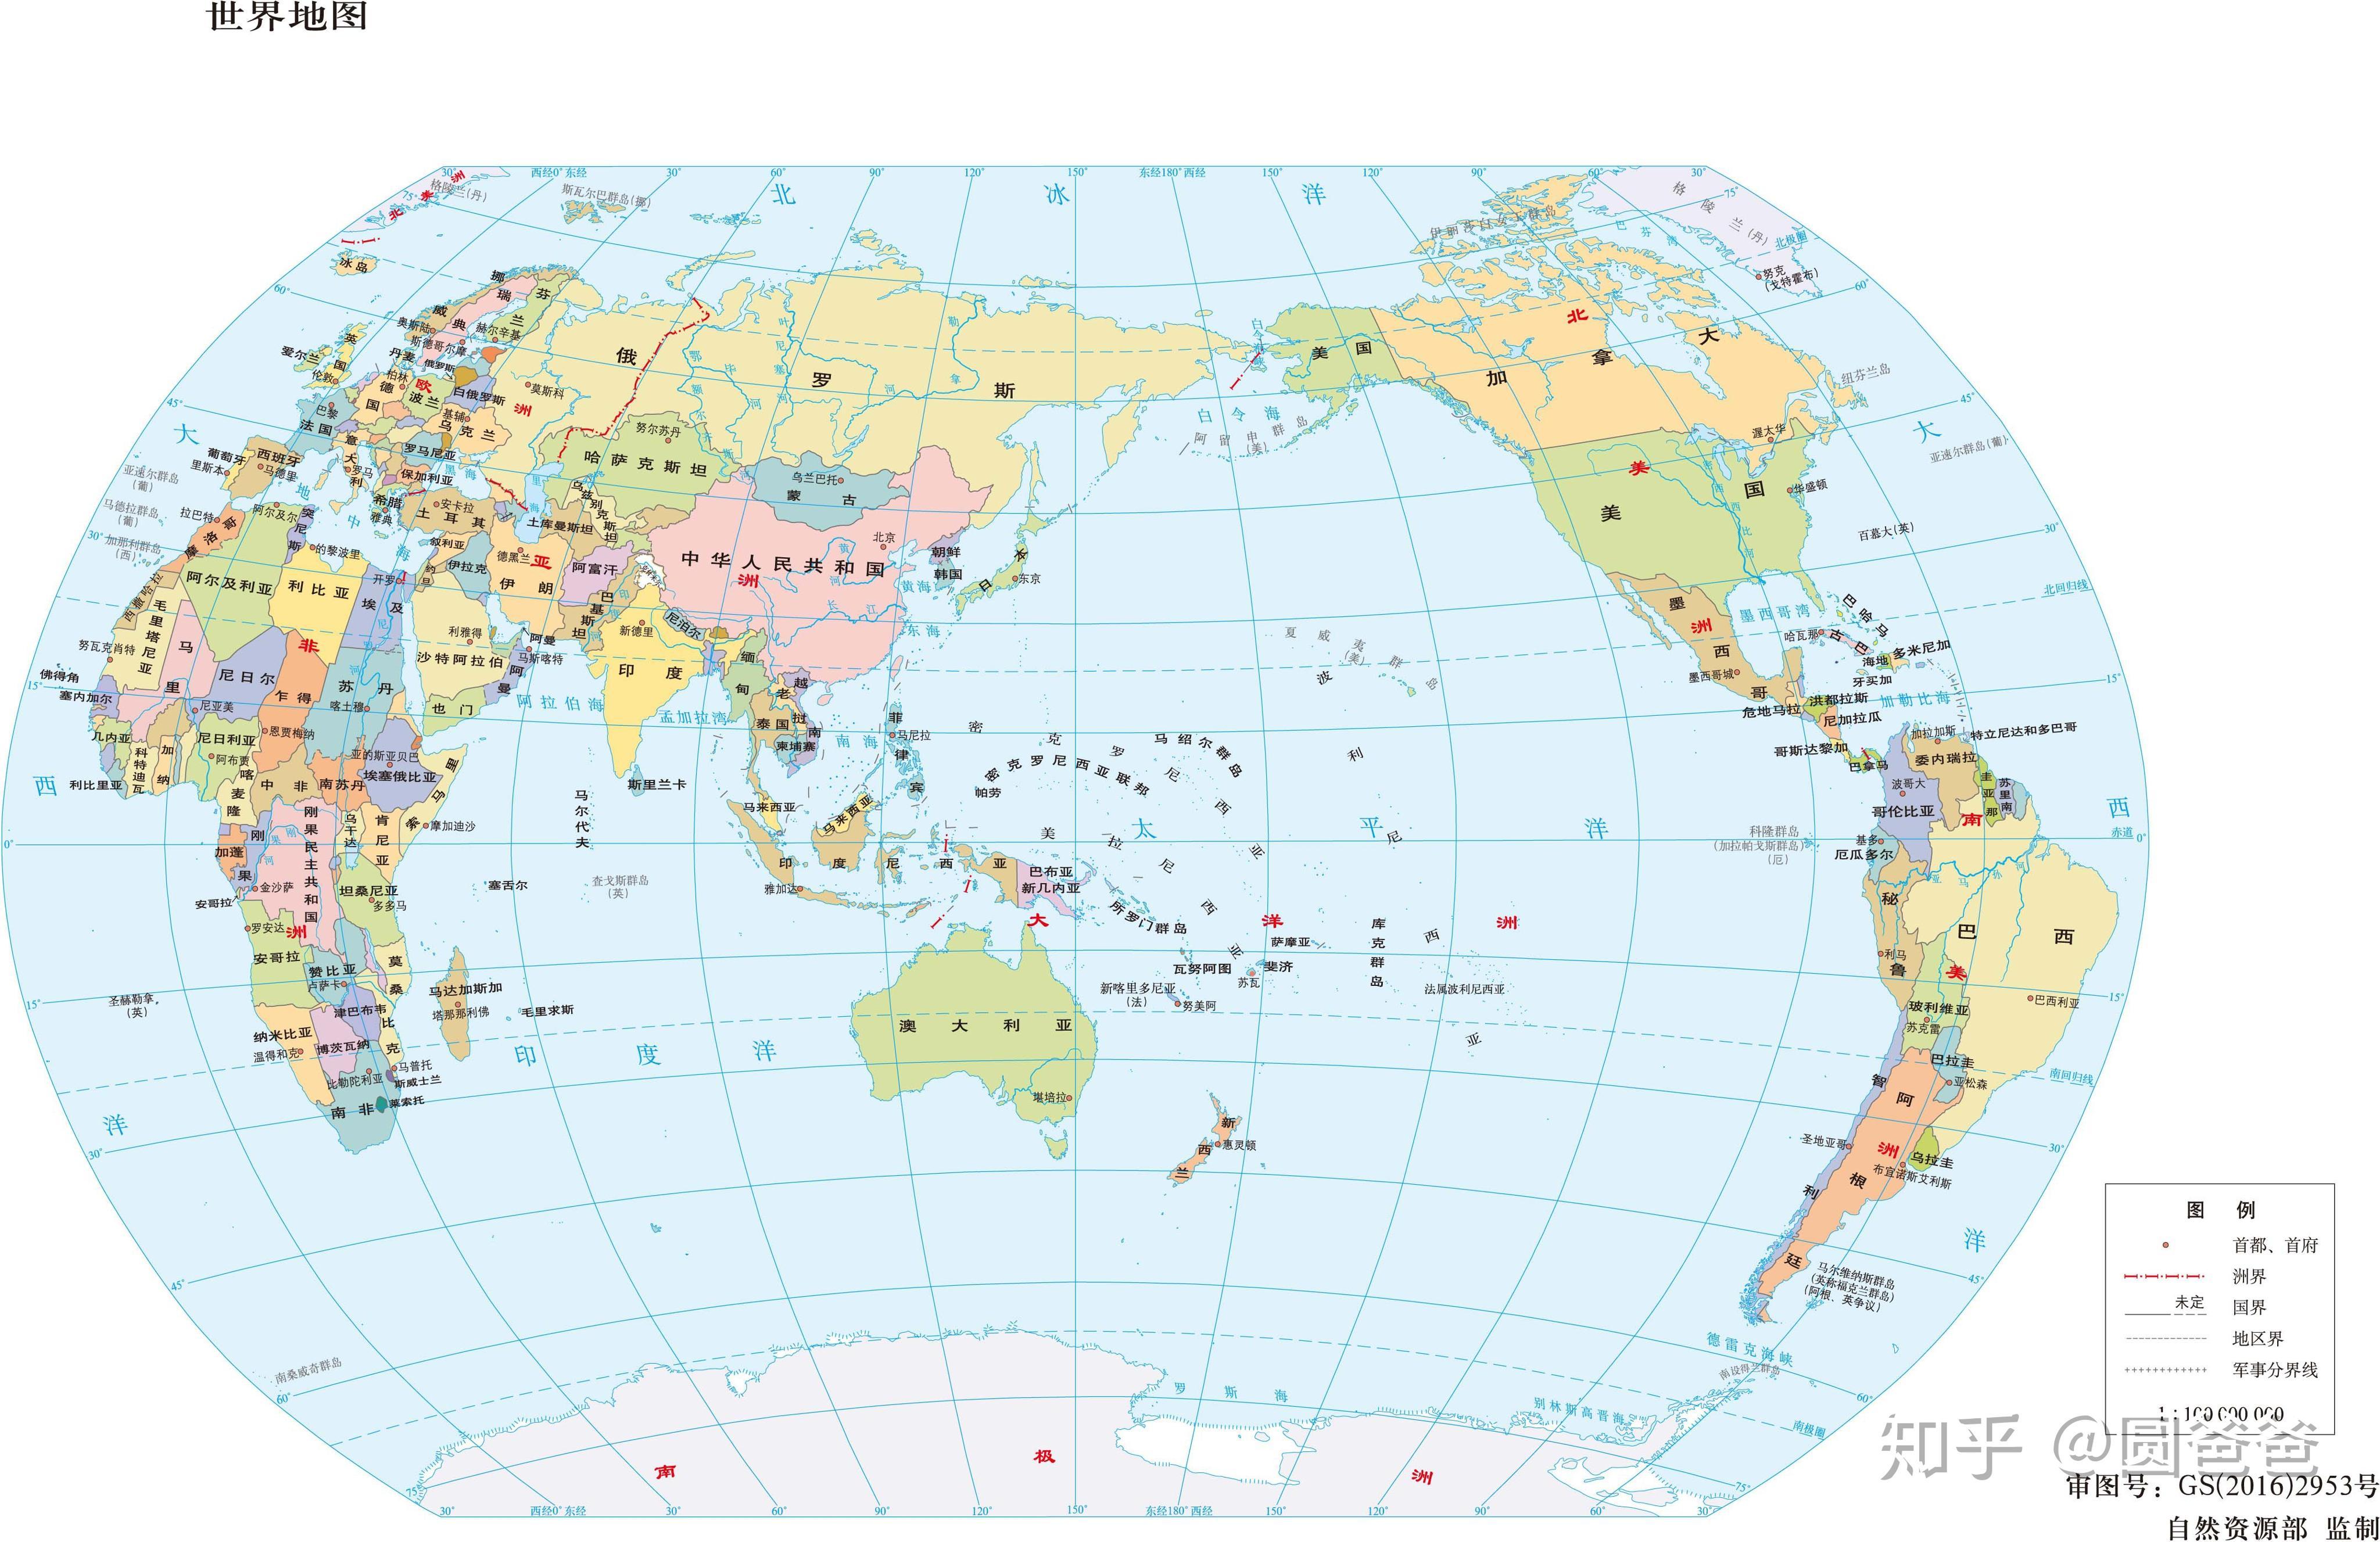 1亿全白底世界地图1:1亿世界地形图然后是g20国家分布图:g20国家分布